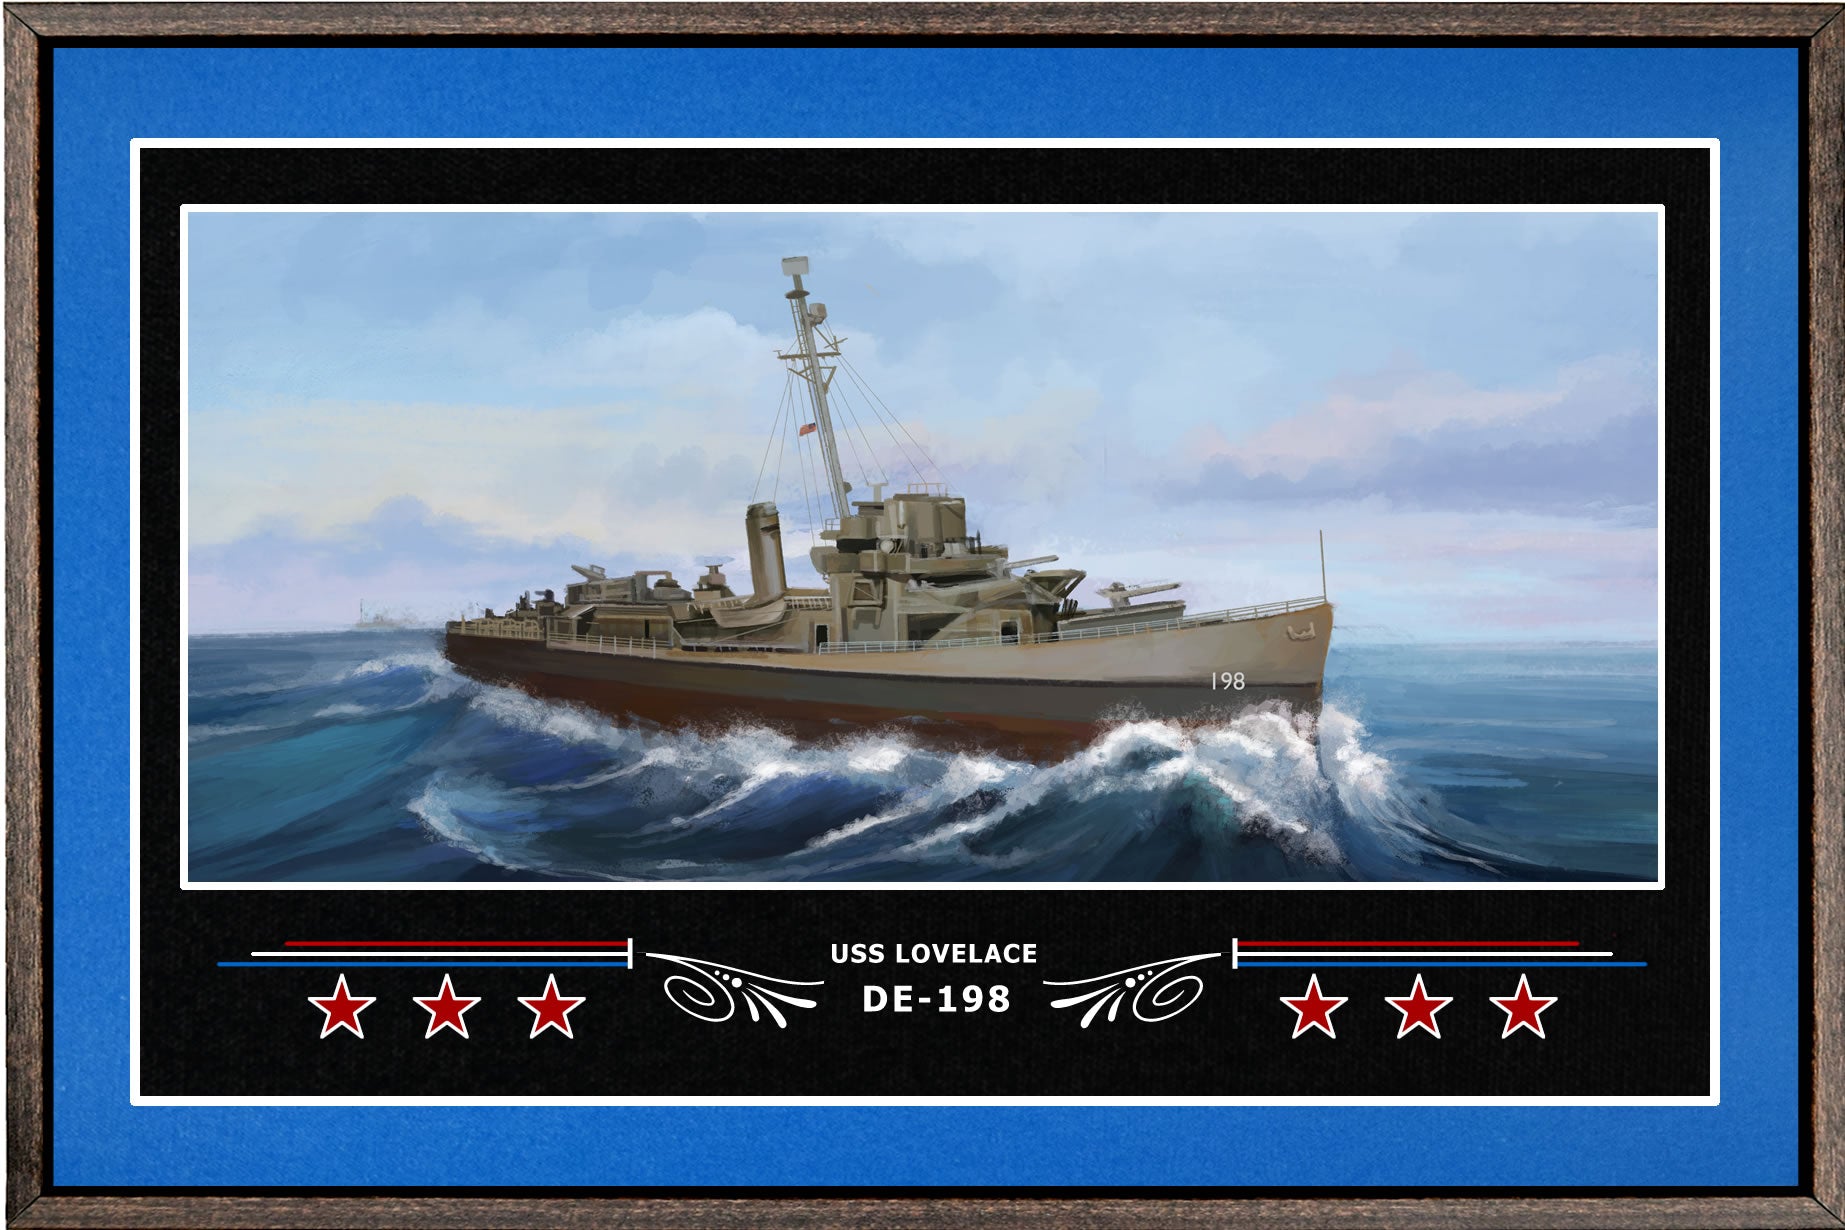 USS LOVELACE DE 198 BOX FRAMED CANVAS ART BLUE